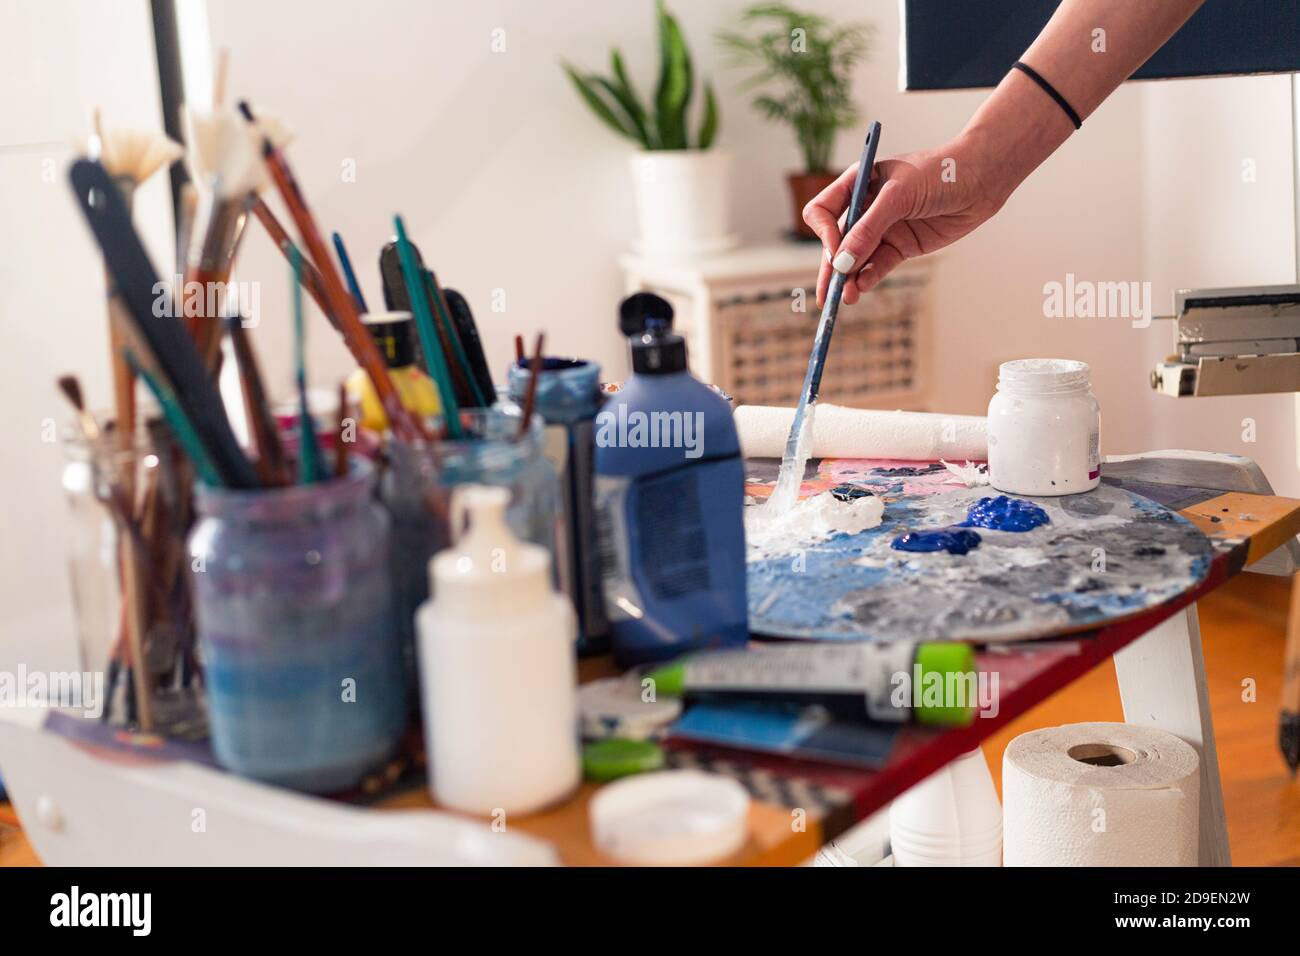 La main du peintre sent de la peinture sur une palette dans son studio. Les pots de peinture et la brosse à peinture sont dans des pots sur le côté. Banque D'Images